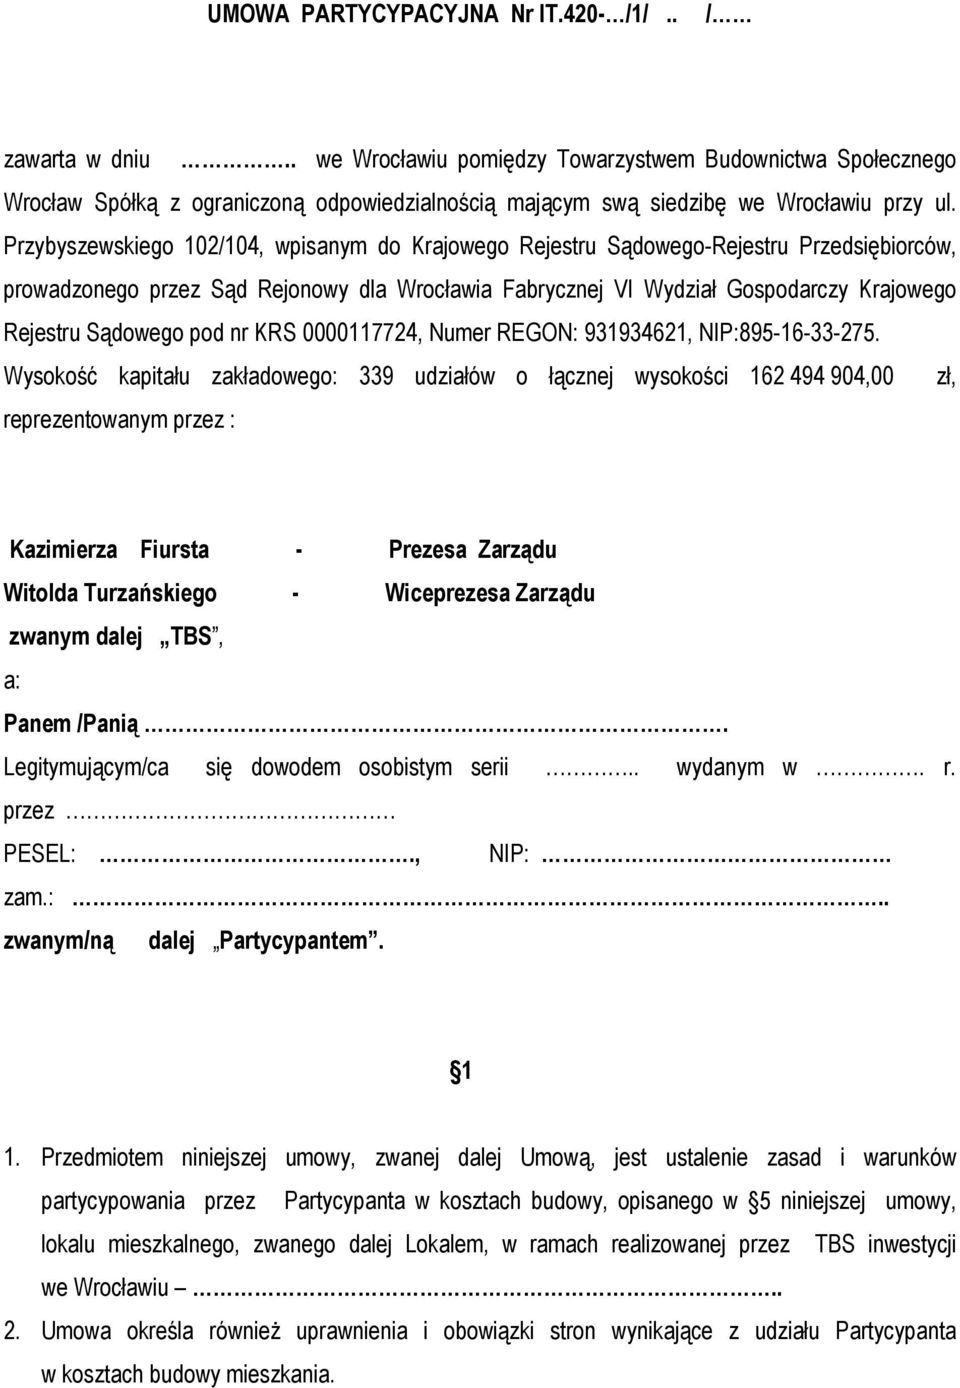 UMOWA PARTYCYPACYJNA Nr IT.420- /1/.. - PDF Darmowe pobieranie